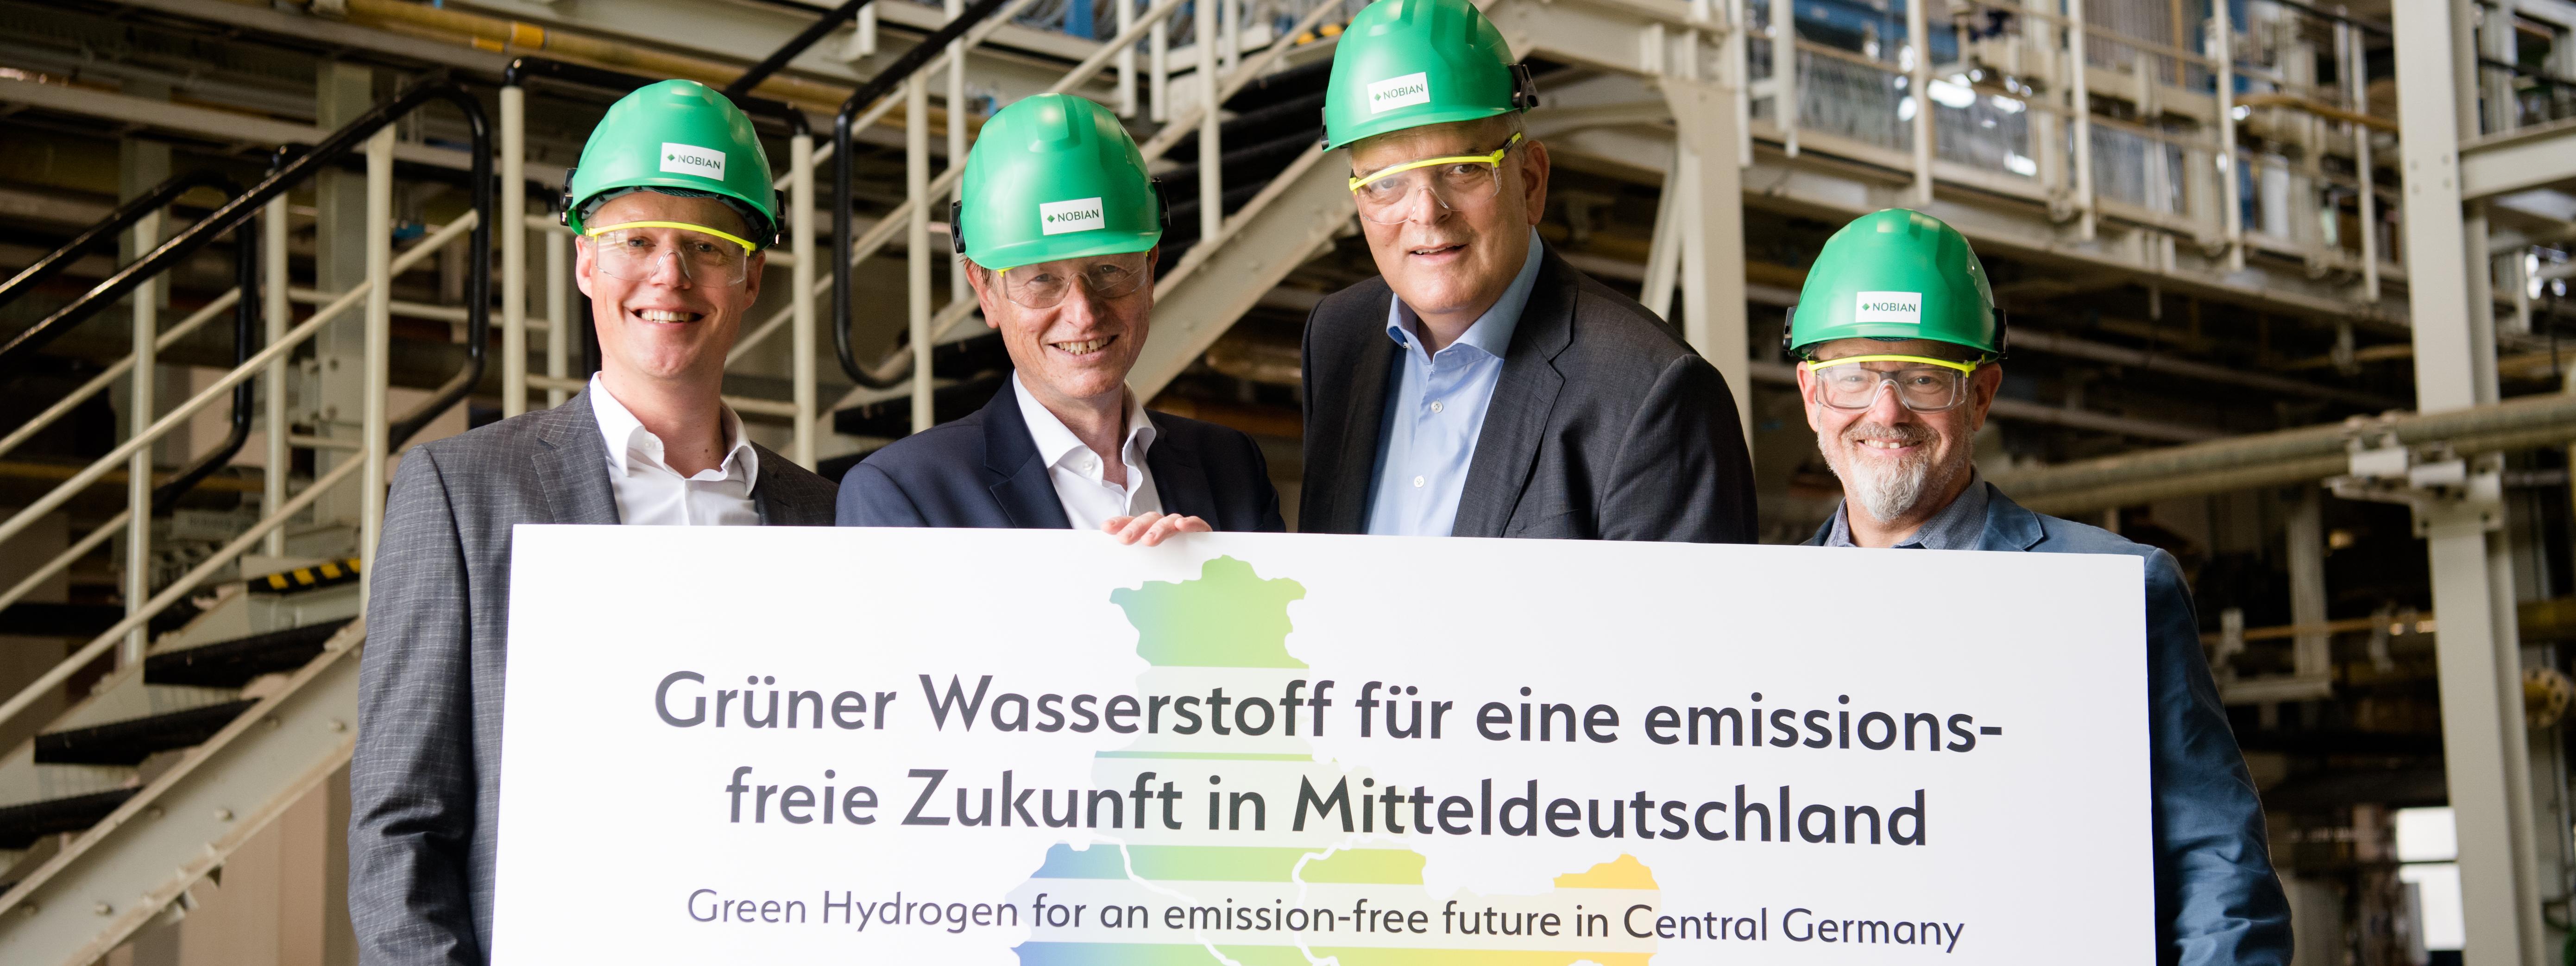 HyCC und VNG entwickeln gemeinsam grüne Wasserstoffprojekte zur Dekarbonisierung Mitteldeutschlands